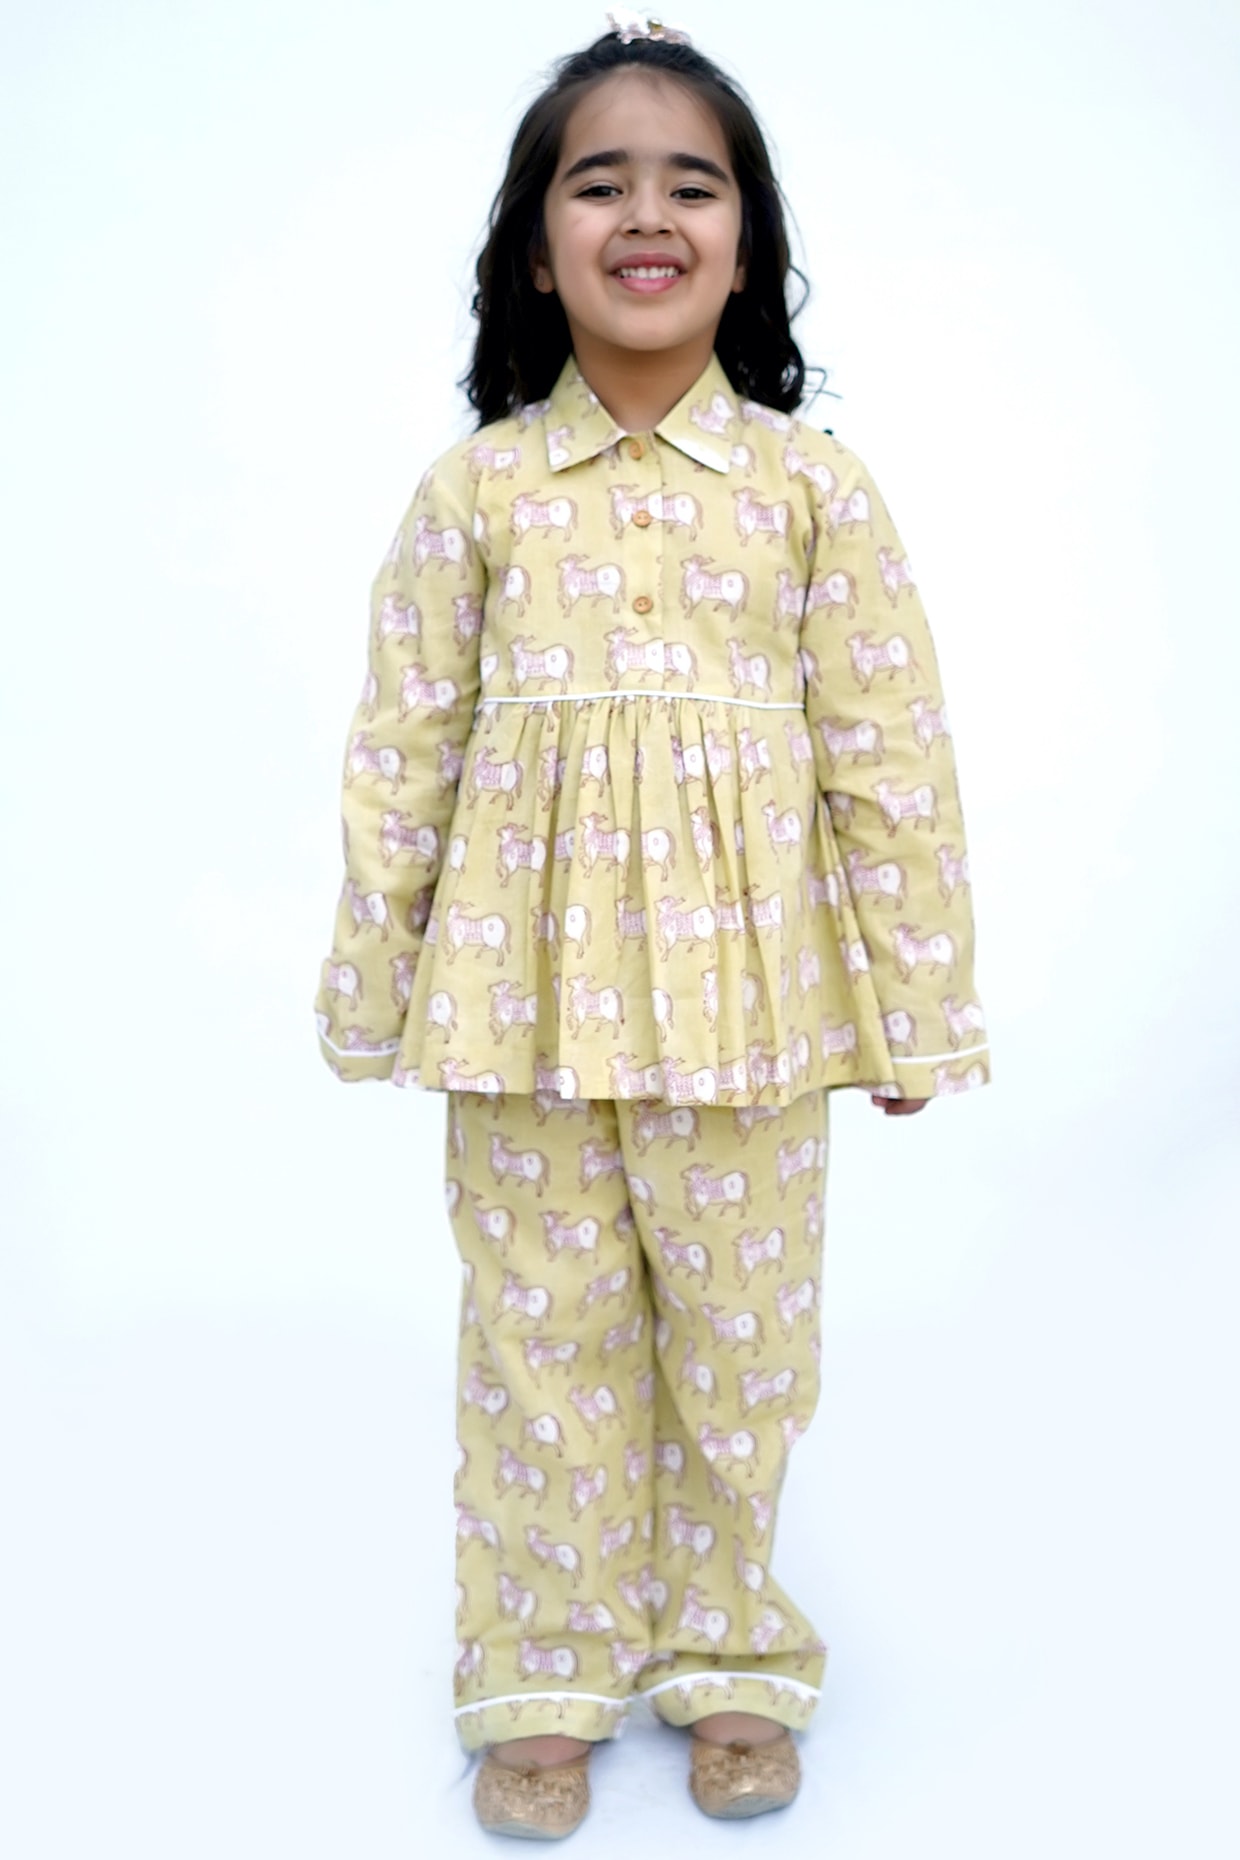 AMILIEe 2-7 Y Kids Baby Girl Silk Nightgown Sleeping Dress Short Sleeve  Satin Home Nightdress Sleepwear - Walmart.com